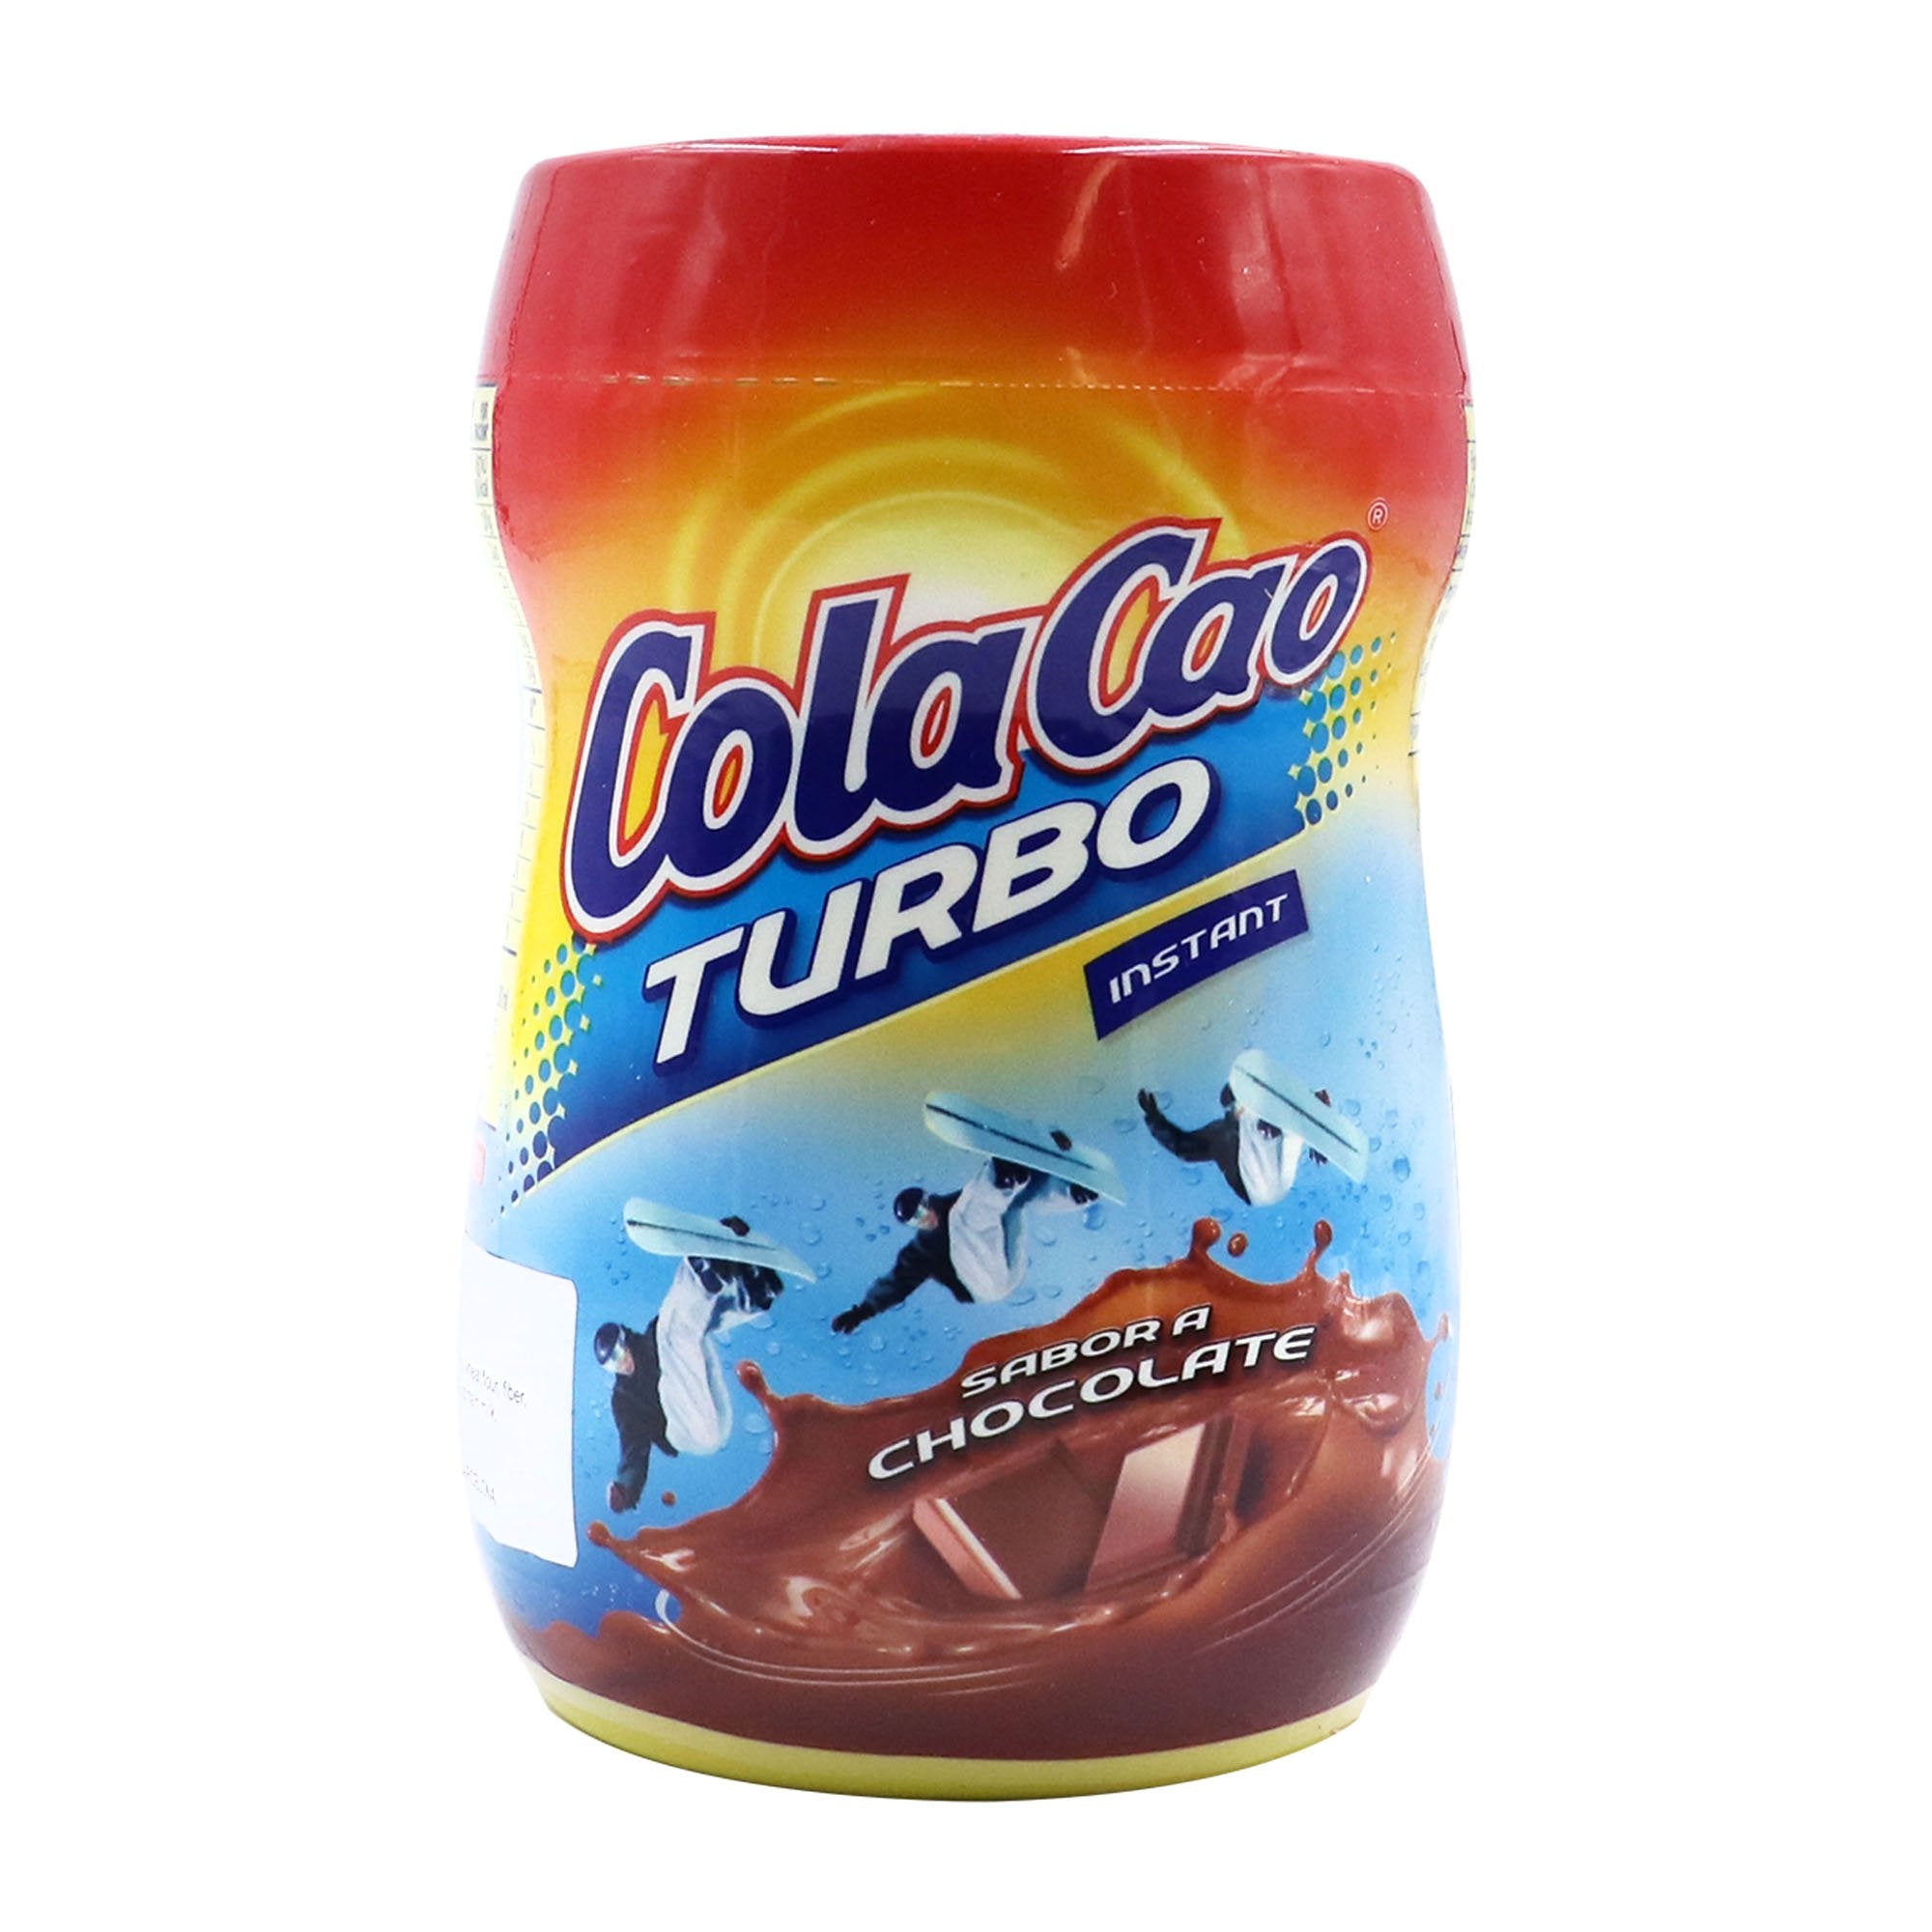 COLACAO TURBO 375GR - Dulce y desayunos - Super Eko